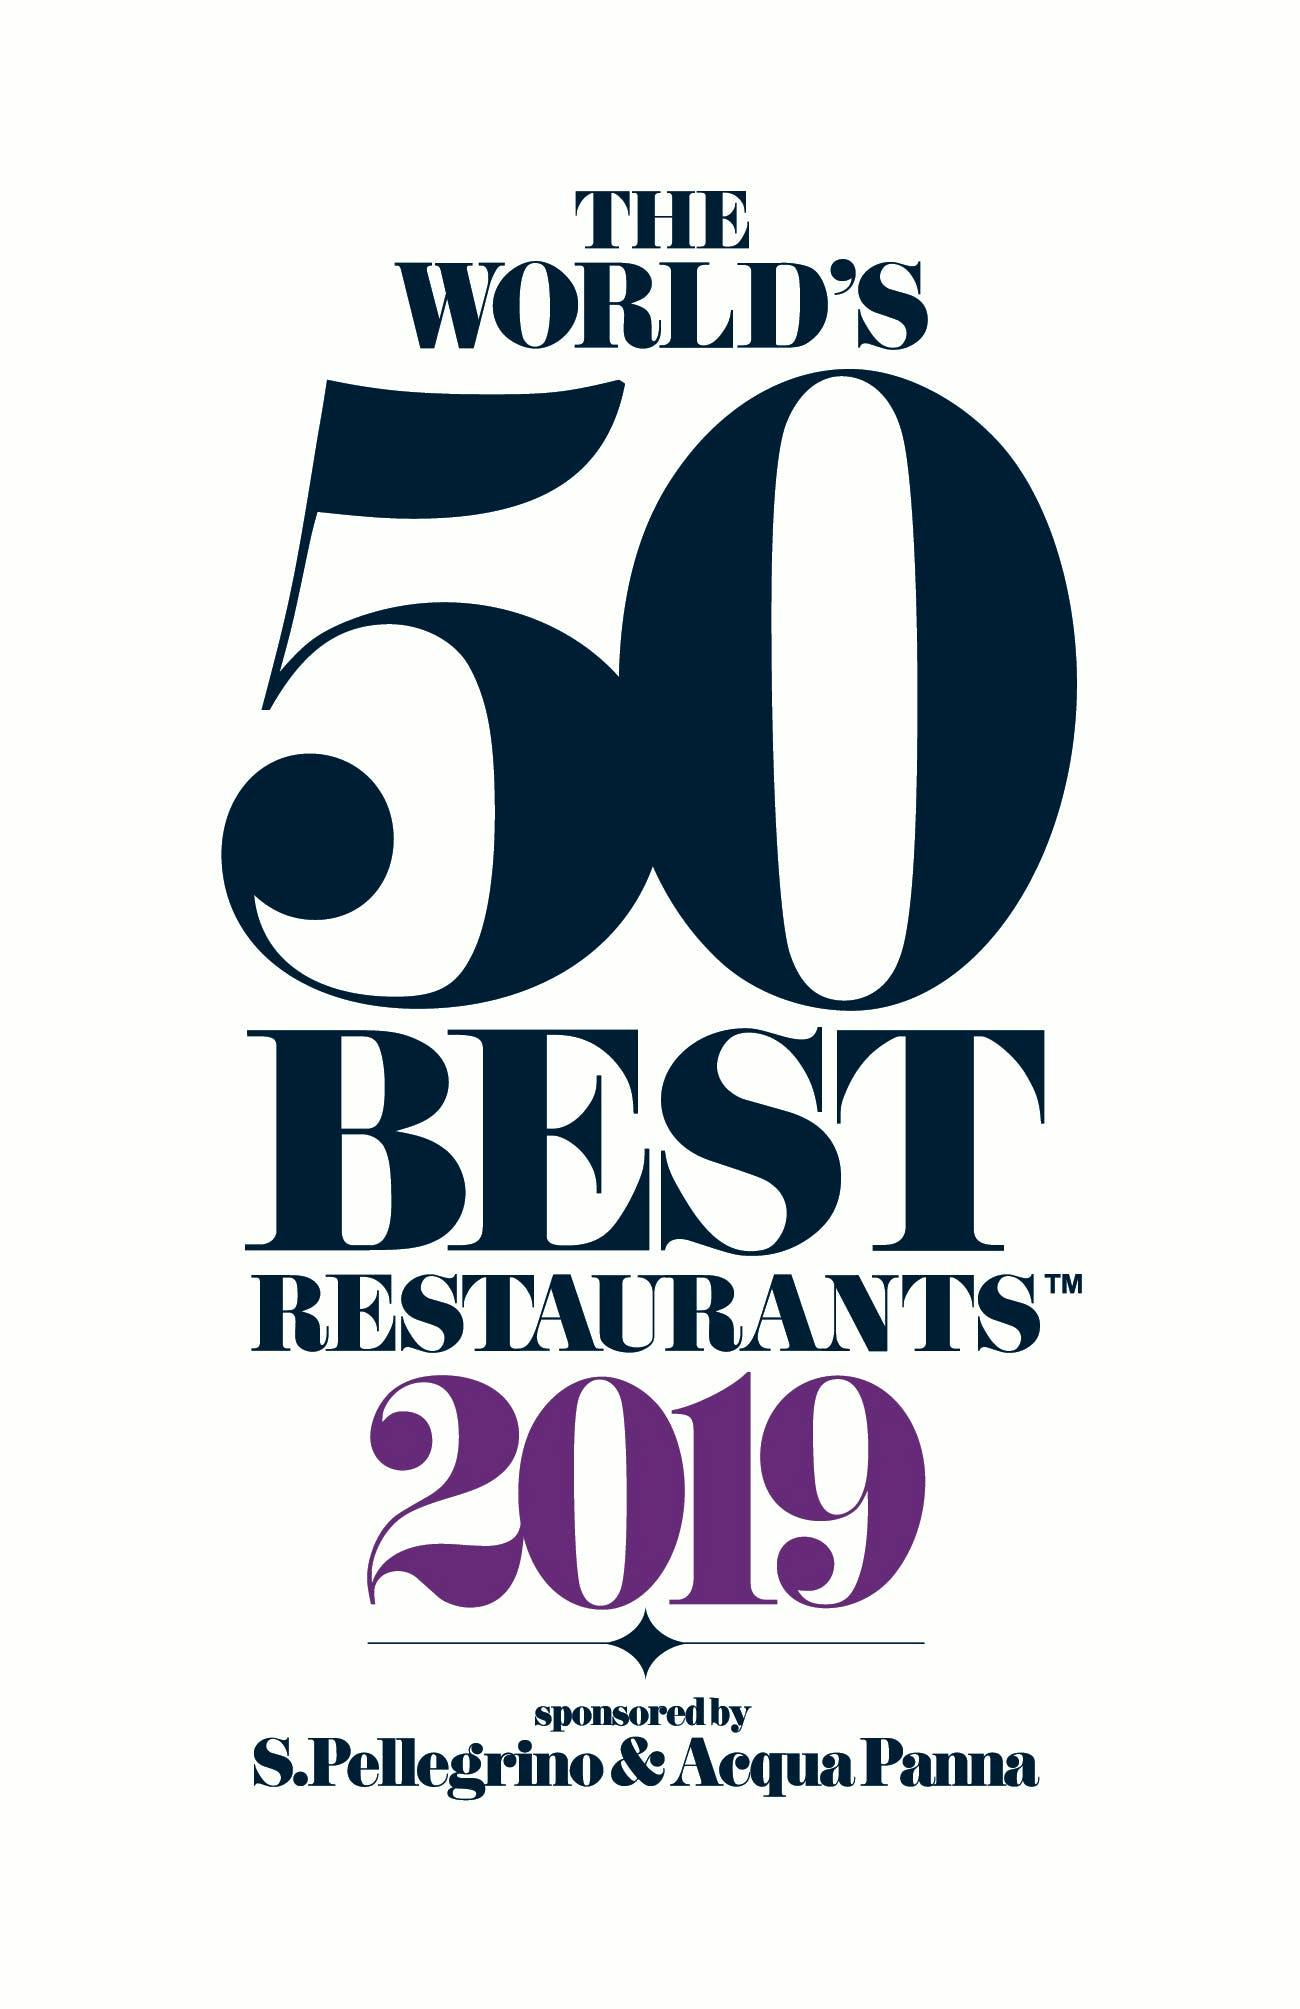 Numero immagine 32 della sezione corrente di Dekton® by Cosentino, sponsor ufficiale del World’s 50 Best Restaurants 2019 di Cosentino Italia